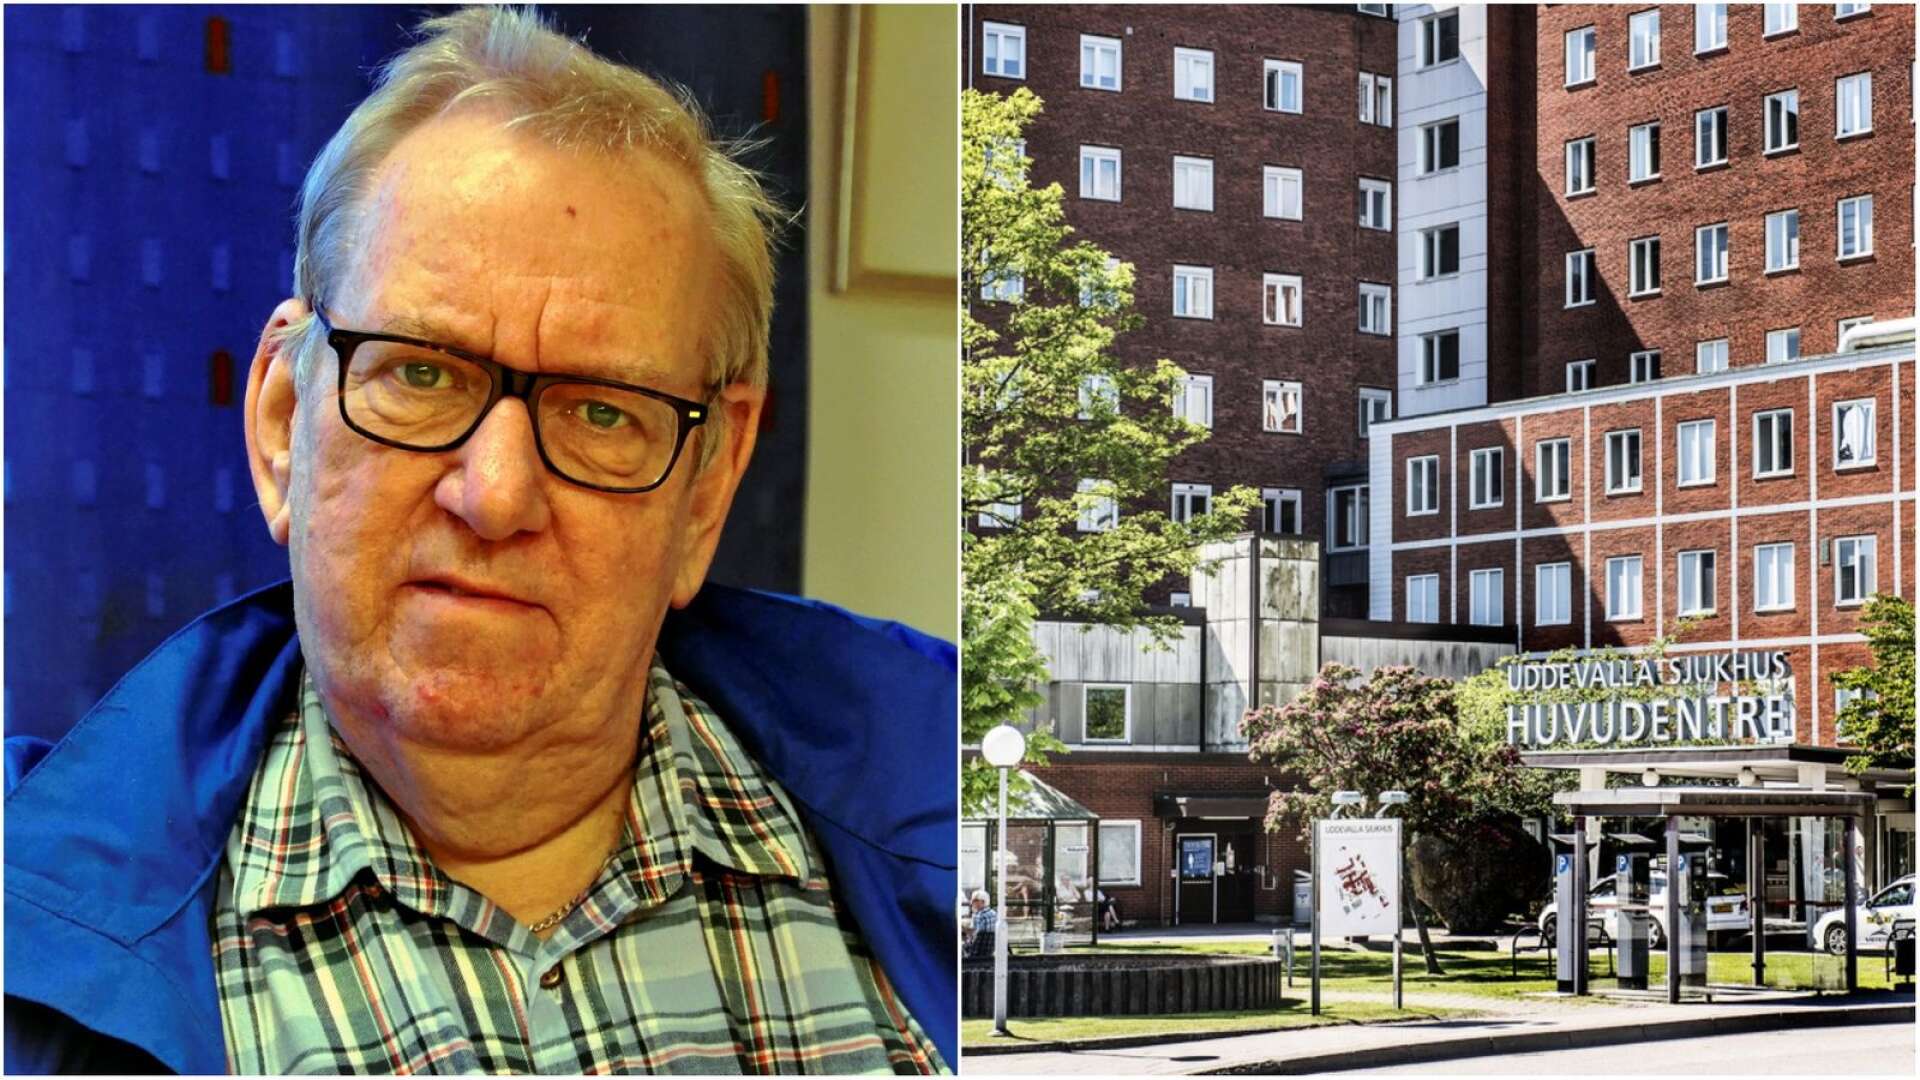 Tomas Sannebro skulle till Uddevalla sjukhus. Men en tillräcklig ersättning från Sjukresor i Västra Götaland fick han inte. Nu ändrar sig dock Sjukresor.